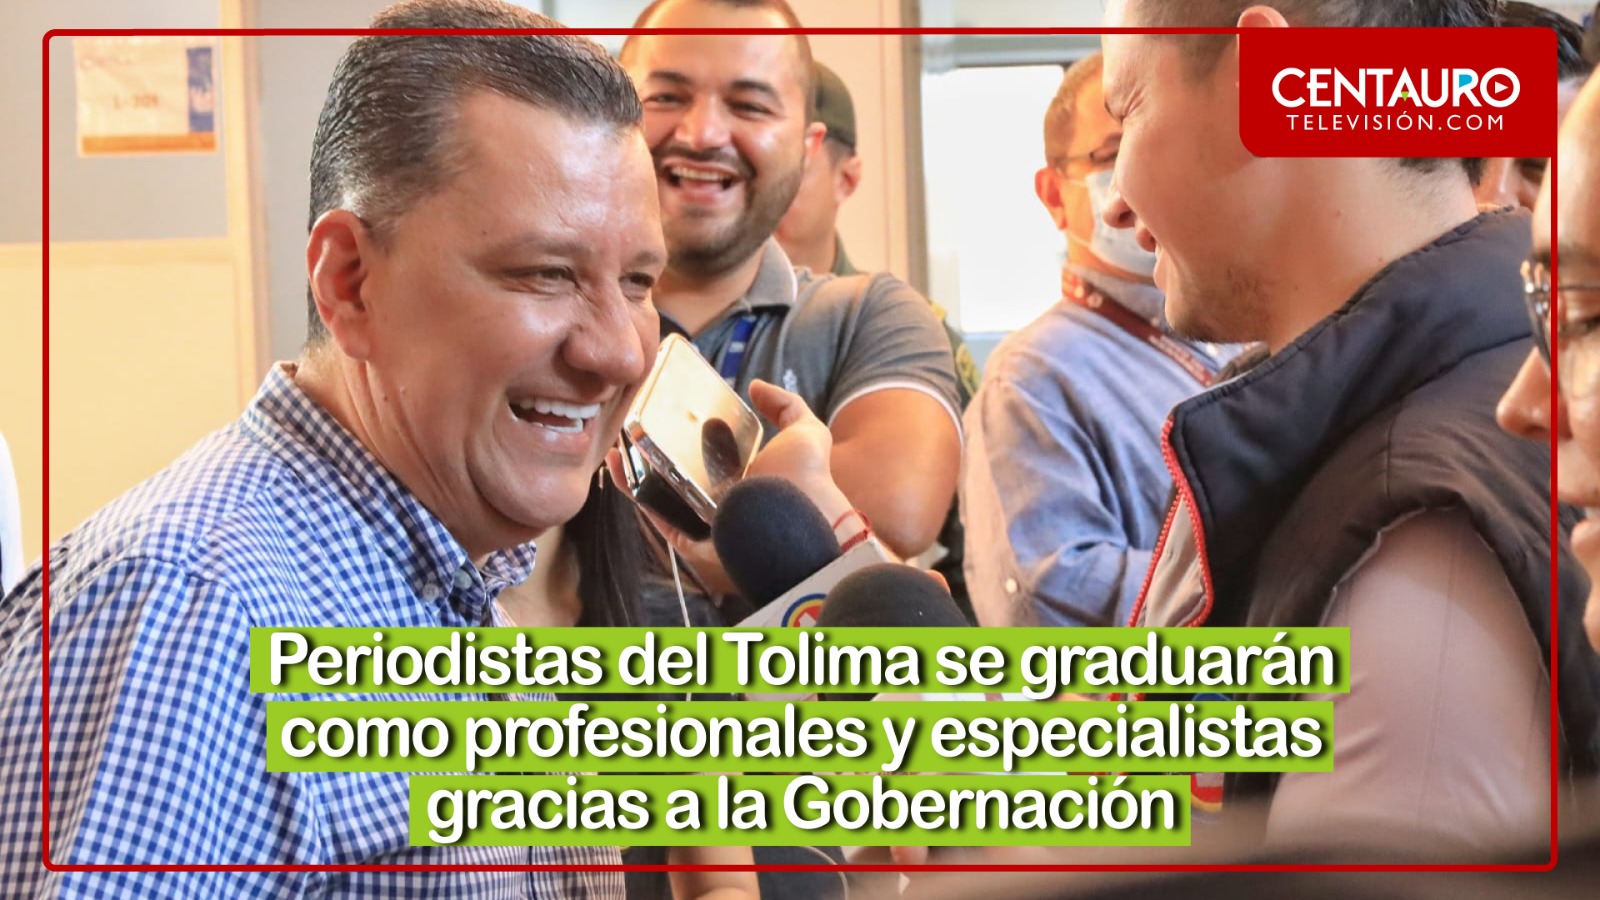 Periodistas del Tolima se graduarán como profesionales y especialistas gracias a la Gobernación